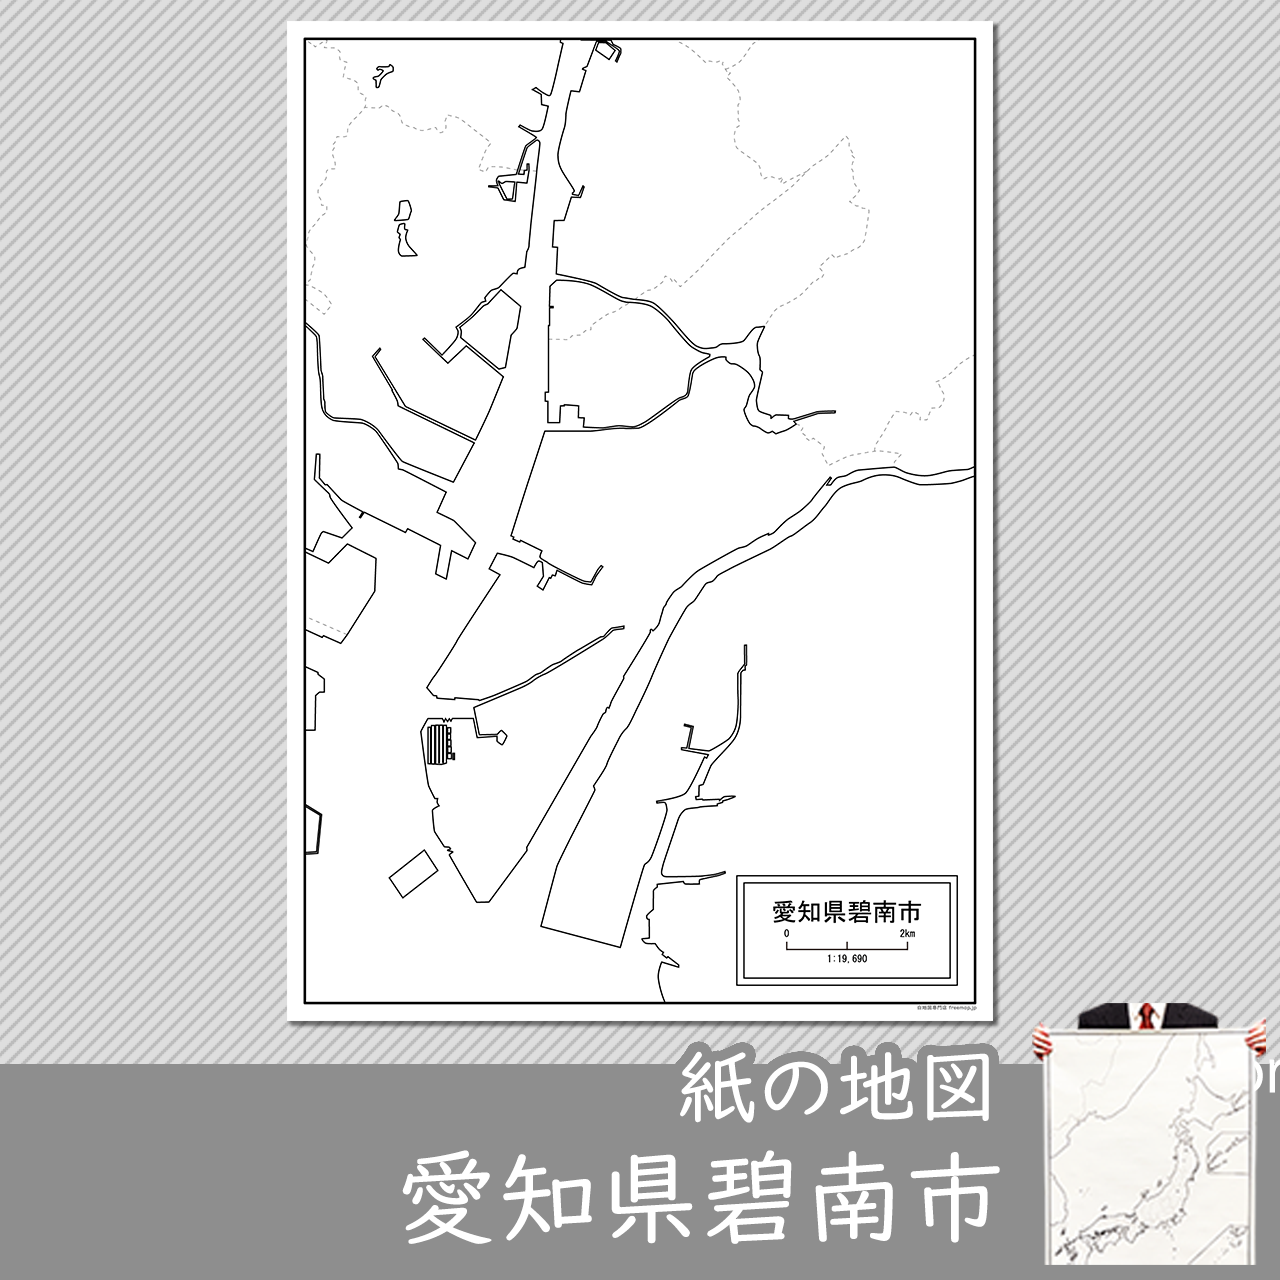 碧南市の紙の白地図のサムネイル